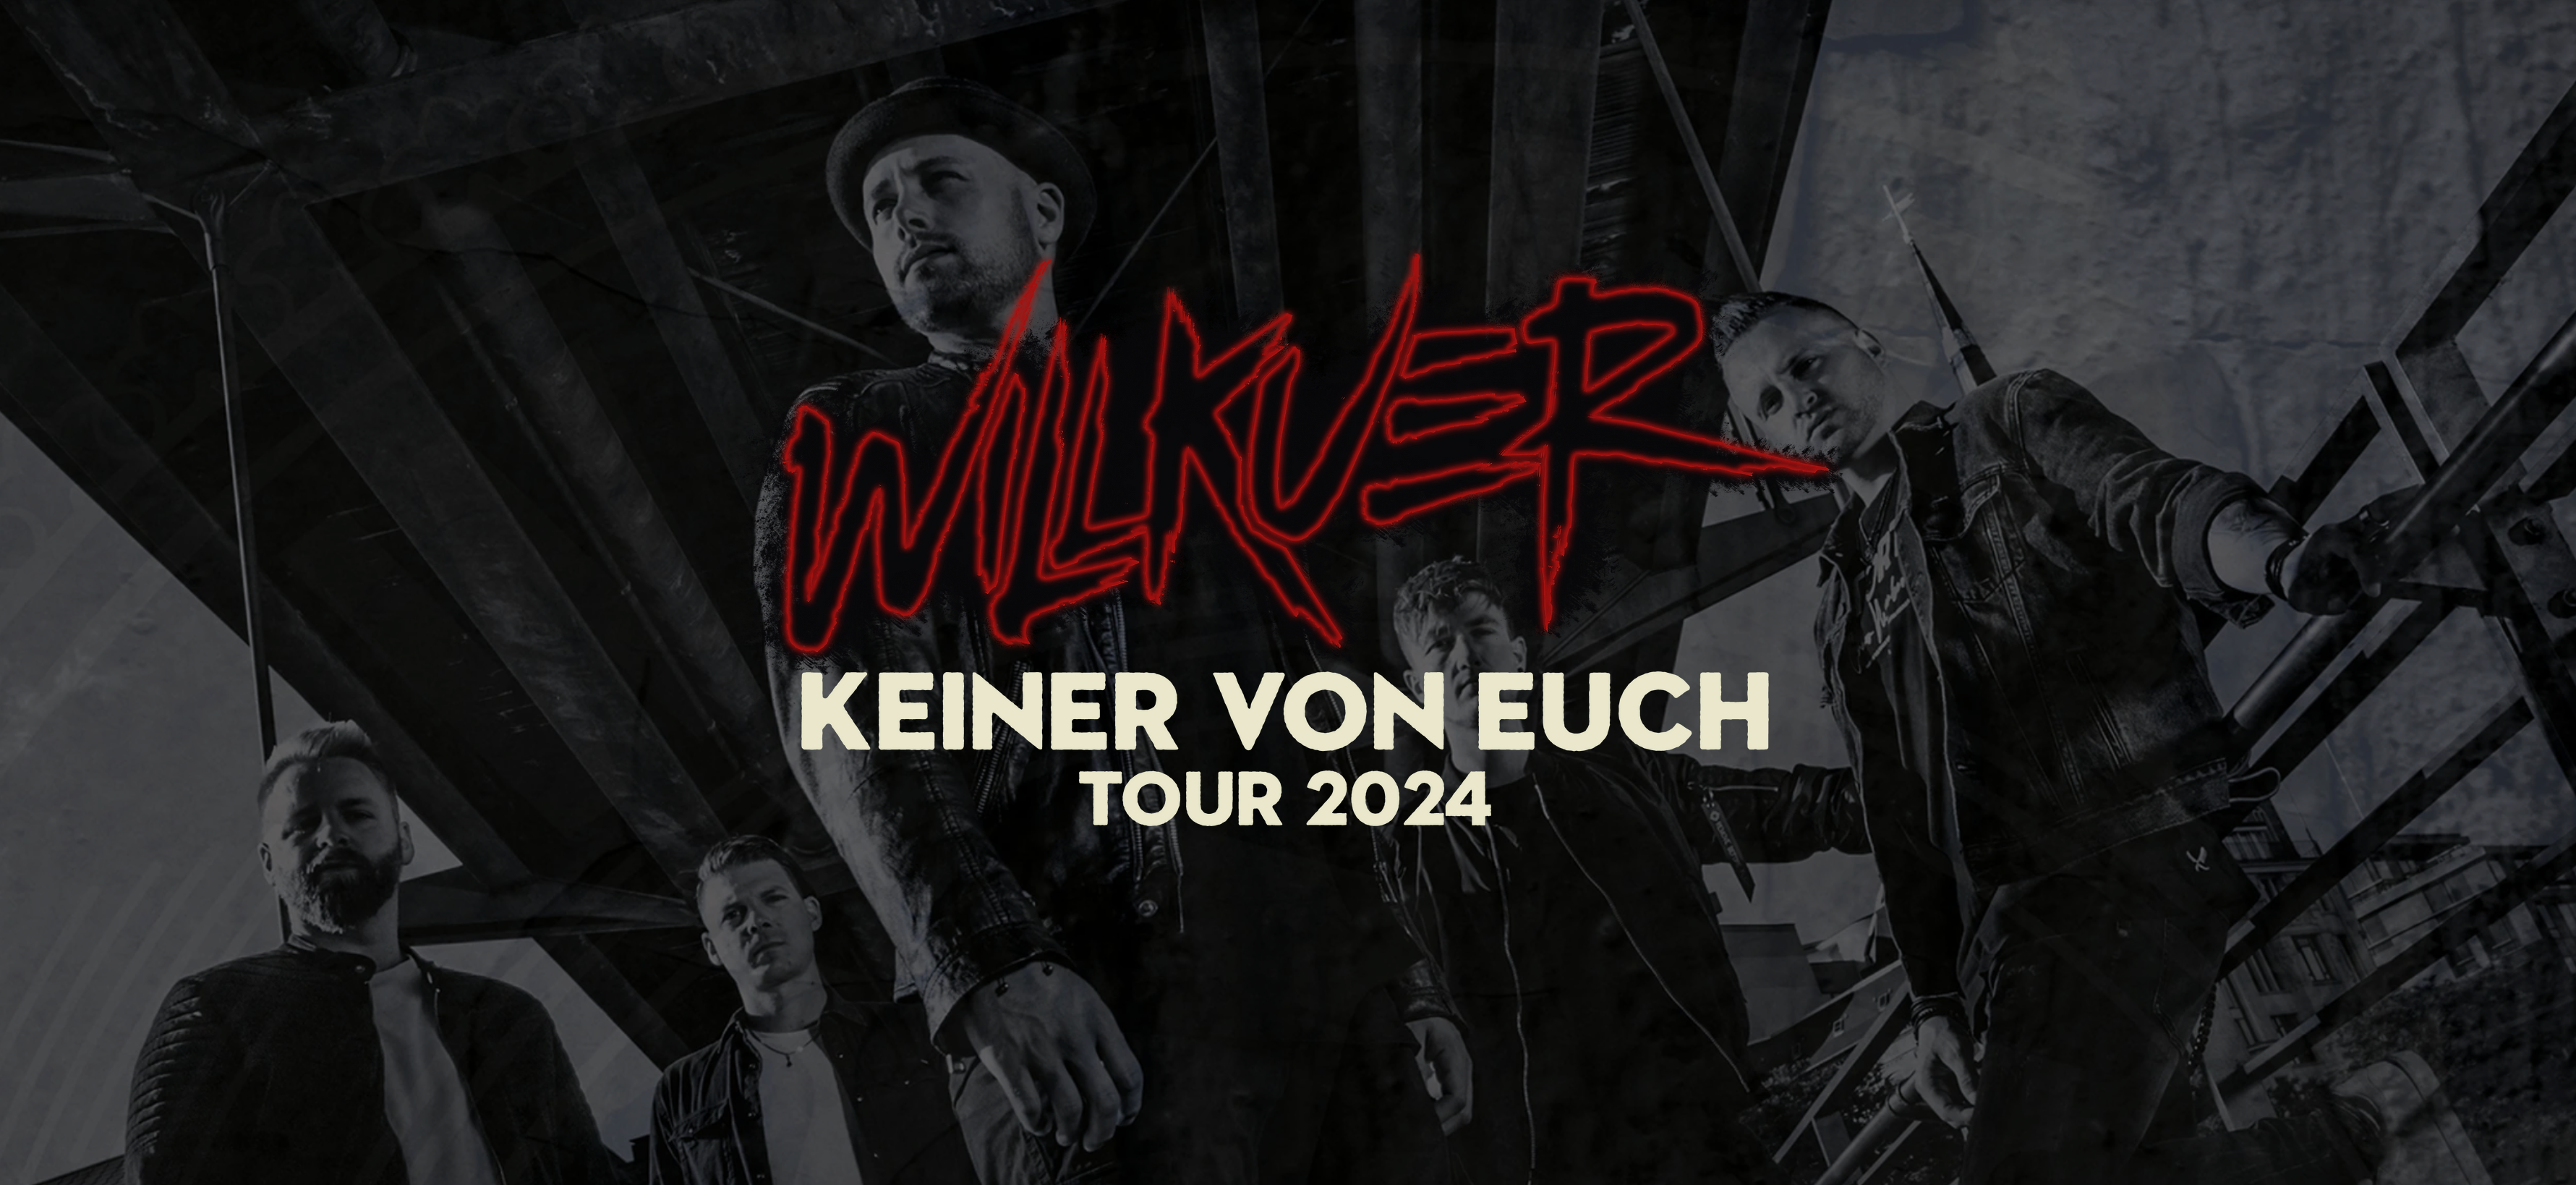 (c) Willkuer-tickets.de